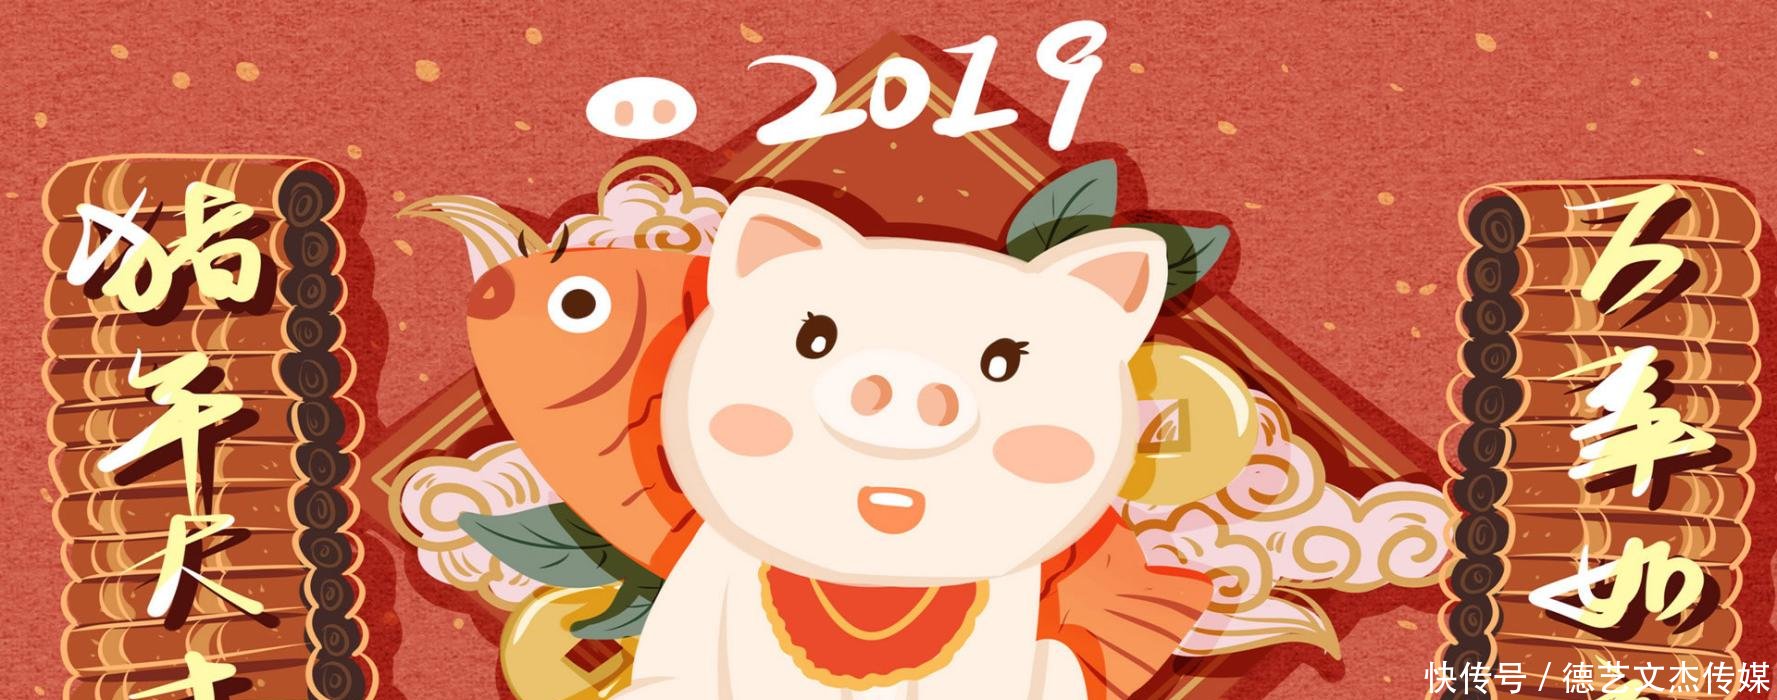 2019年元旦祝福语大全 猪年的第一声问候送上